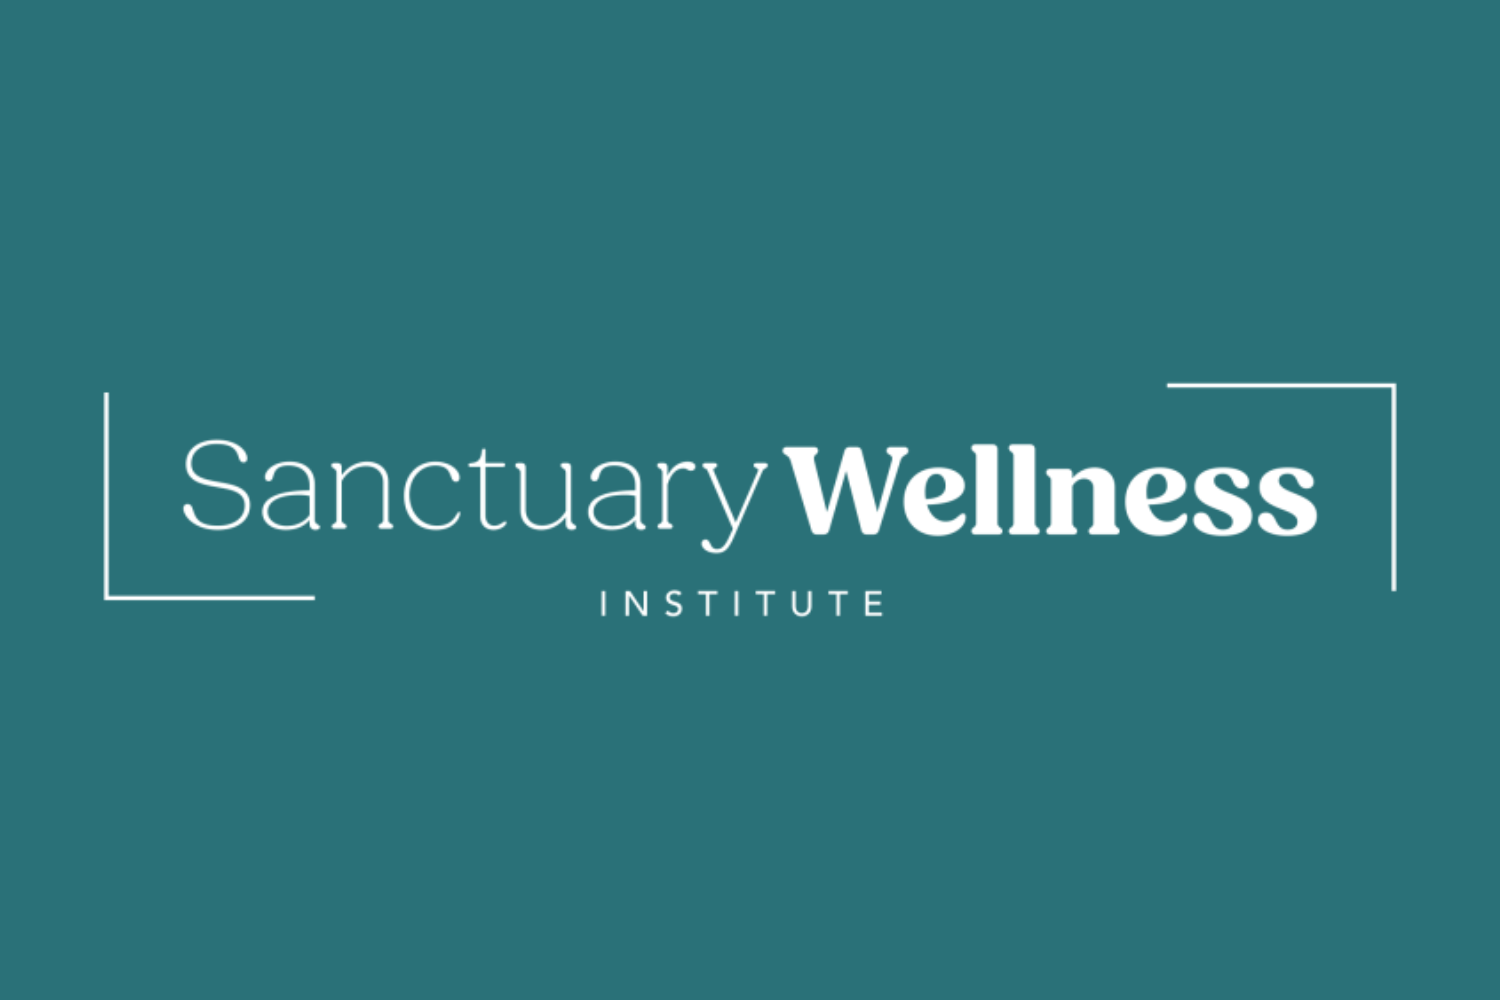 Is The Sanctuary Wellness Institute Legit?